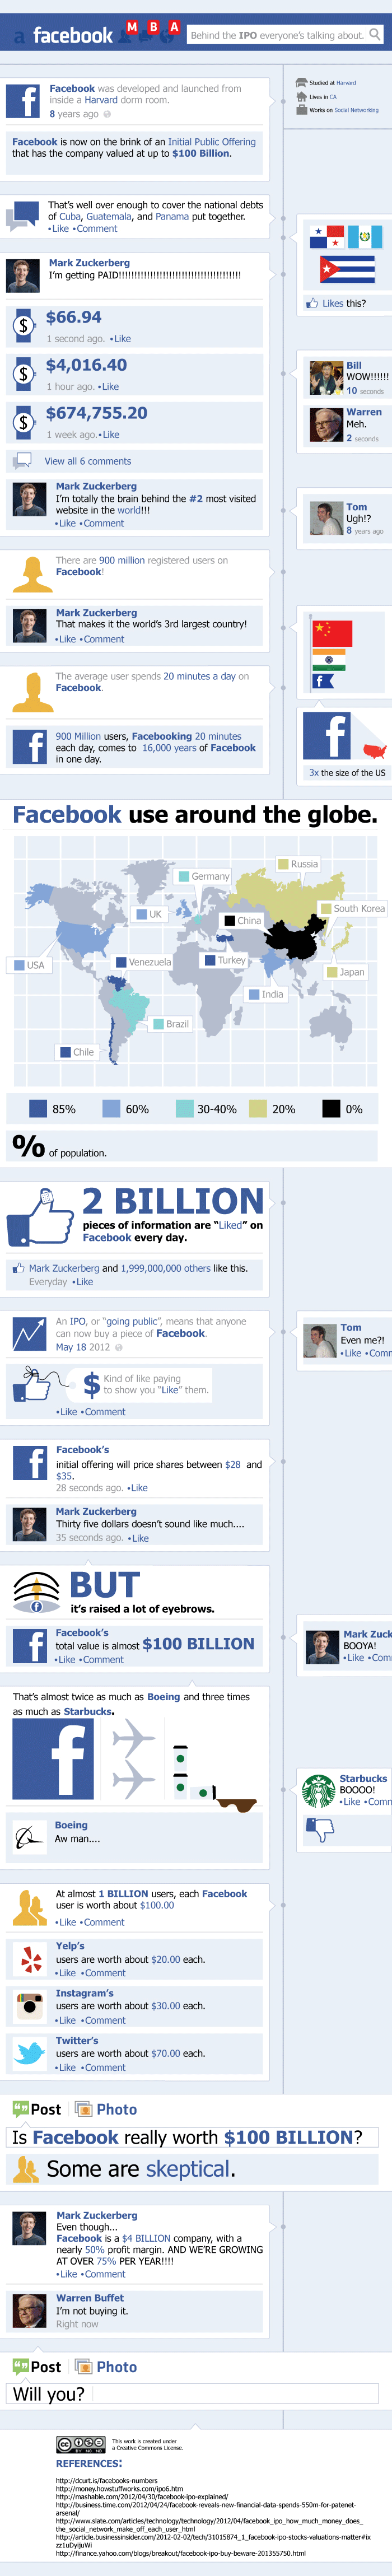 Todos los detalles de la salida a Bolsa de Facebook en una infografía